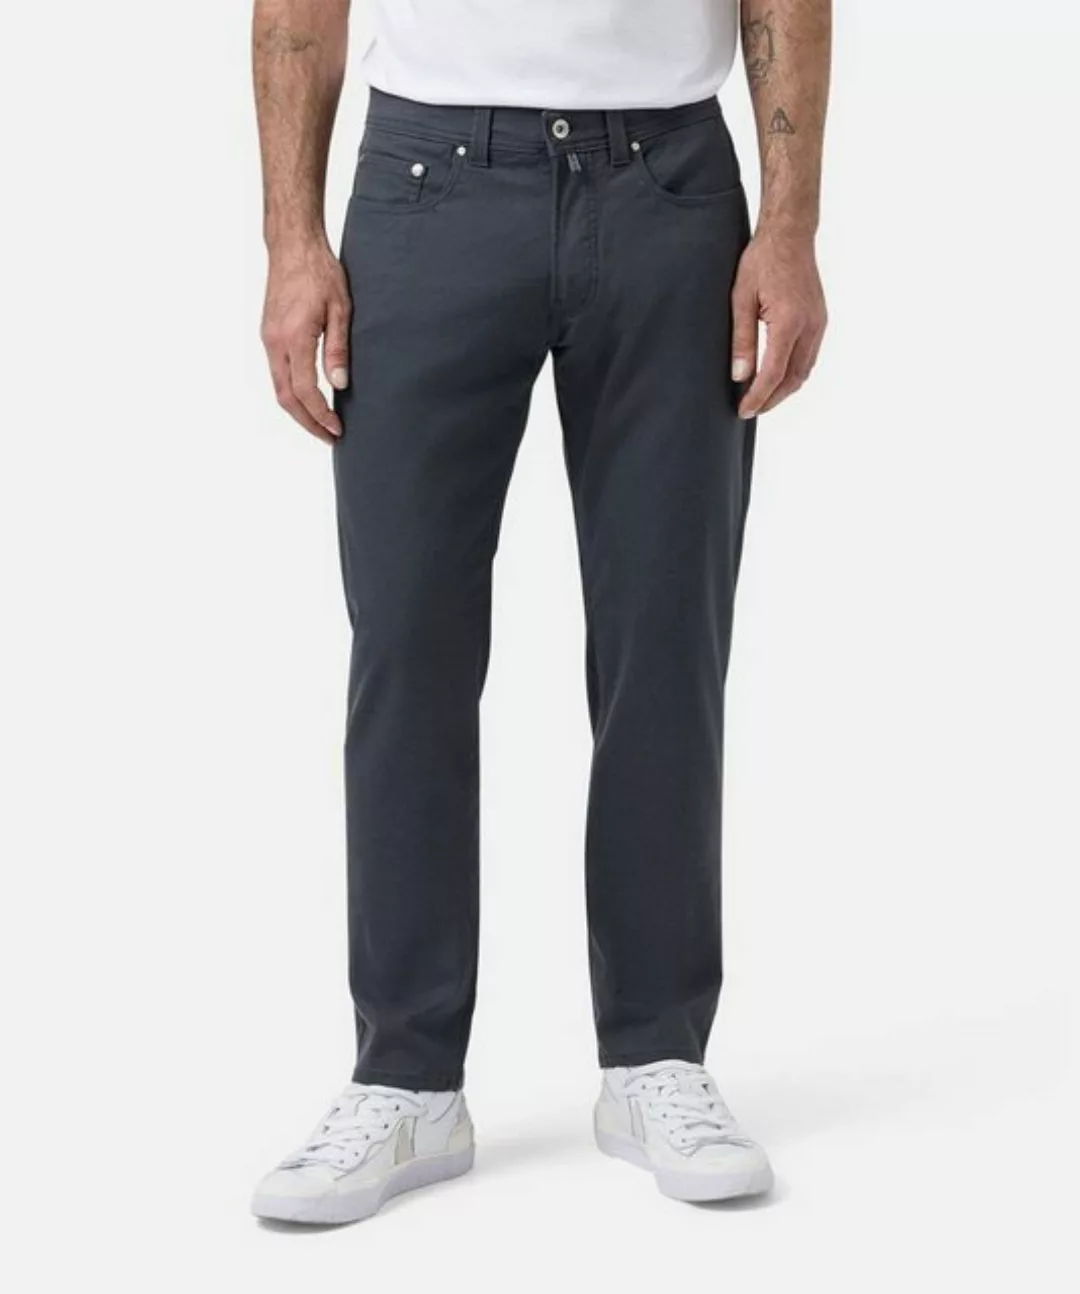 Pierre Cardin Jeans Zukunft Flex Anthrazit - Größe W 34 - L 34 günstig online kaufen